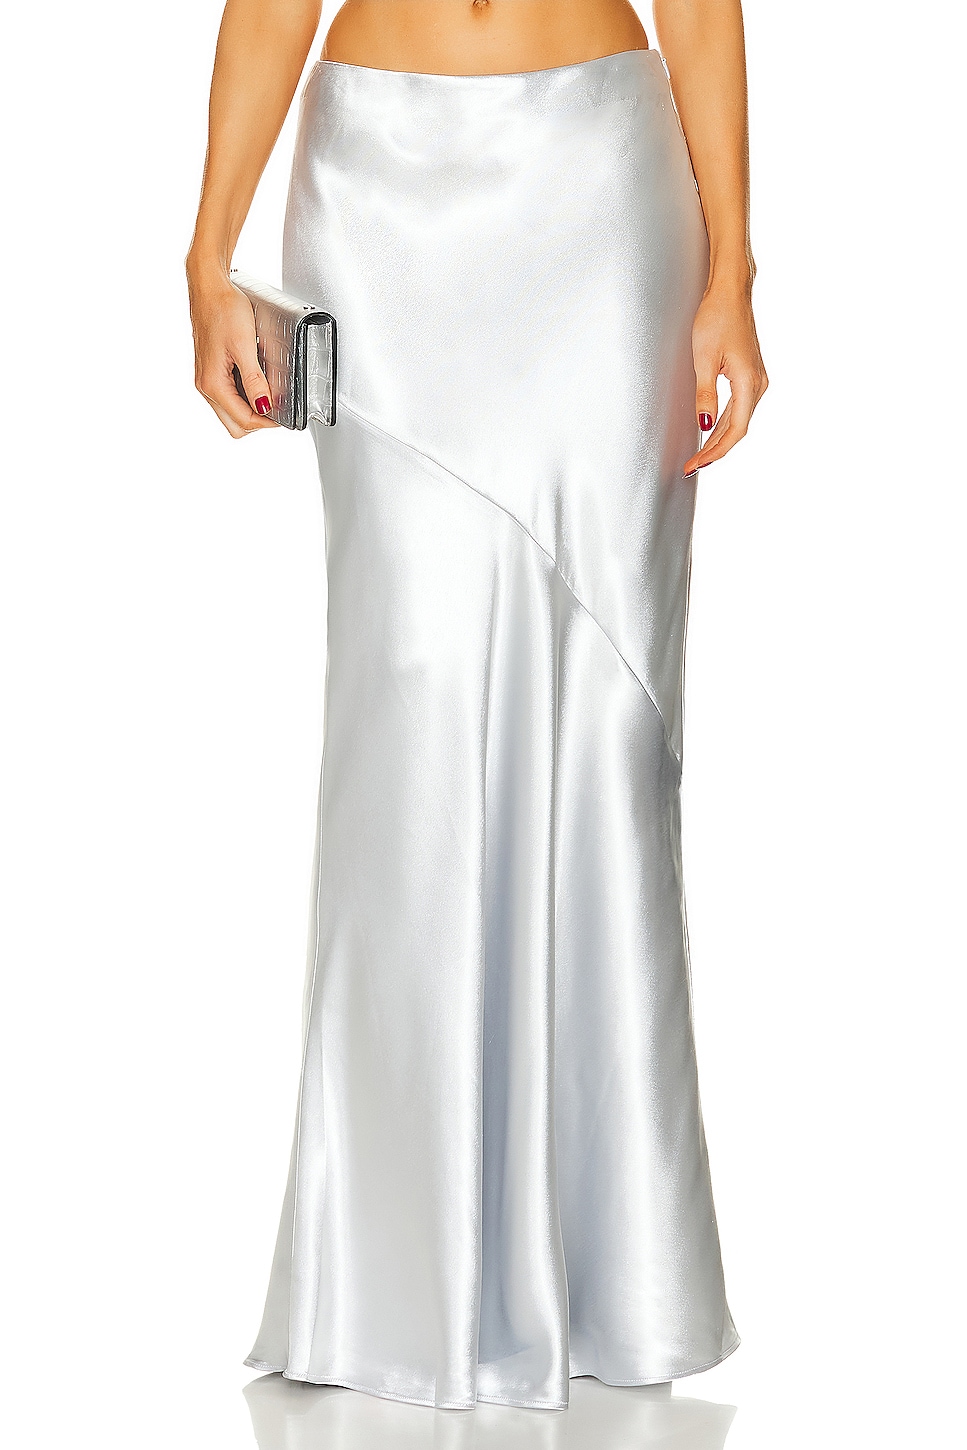 Amalia Maxi Skirt in Metallic Silver